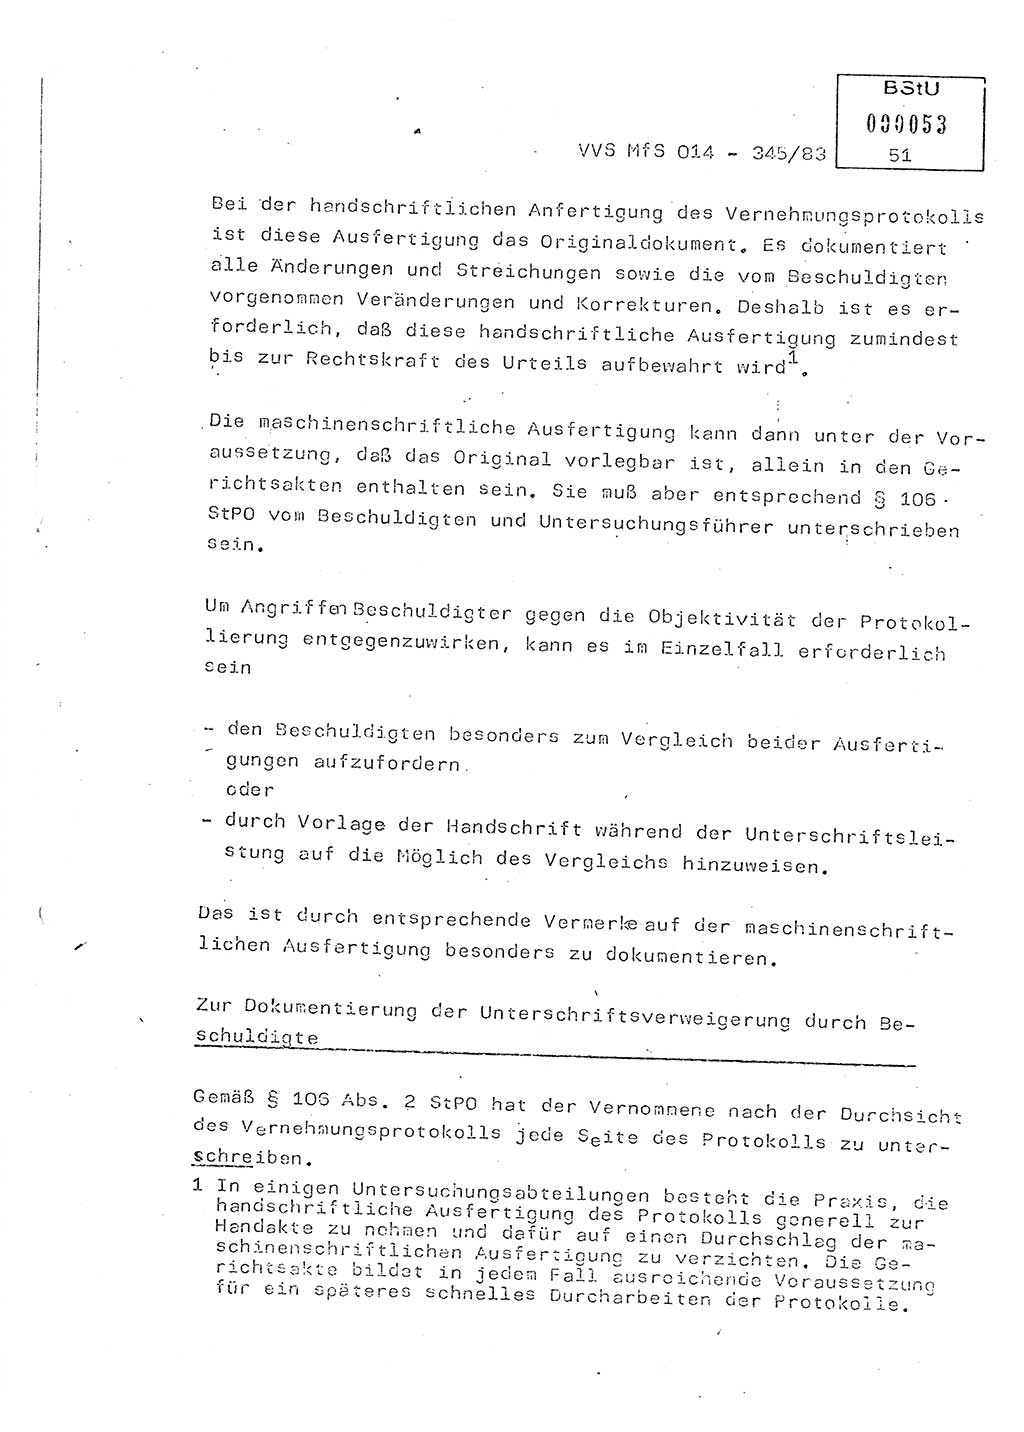 Lektion Ministerium für Staatssicherheit (MfS) [Deutsche Demokratische Republik (DDR)], Hauptabteilung (HA) Ⅸ, Vertrauliche Verschlußsache (VVS) o014-345/83, Berlin 1983, Seite 51 (Lekt. MfS DDR HA Ⅸ VVS o014-345/83 1983, S. 51)